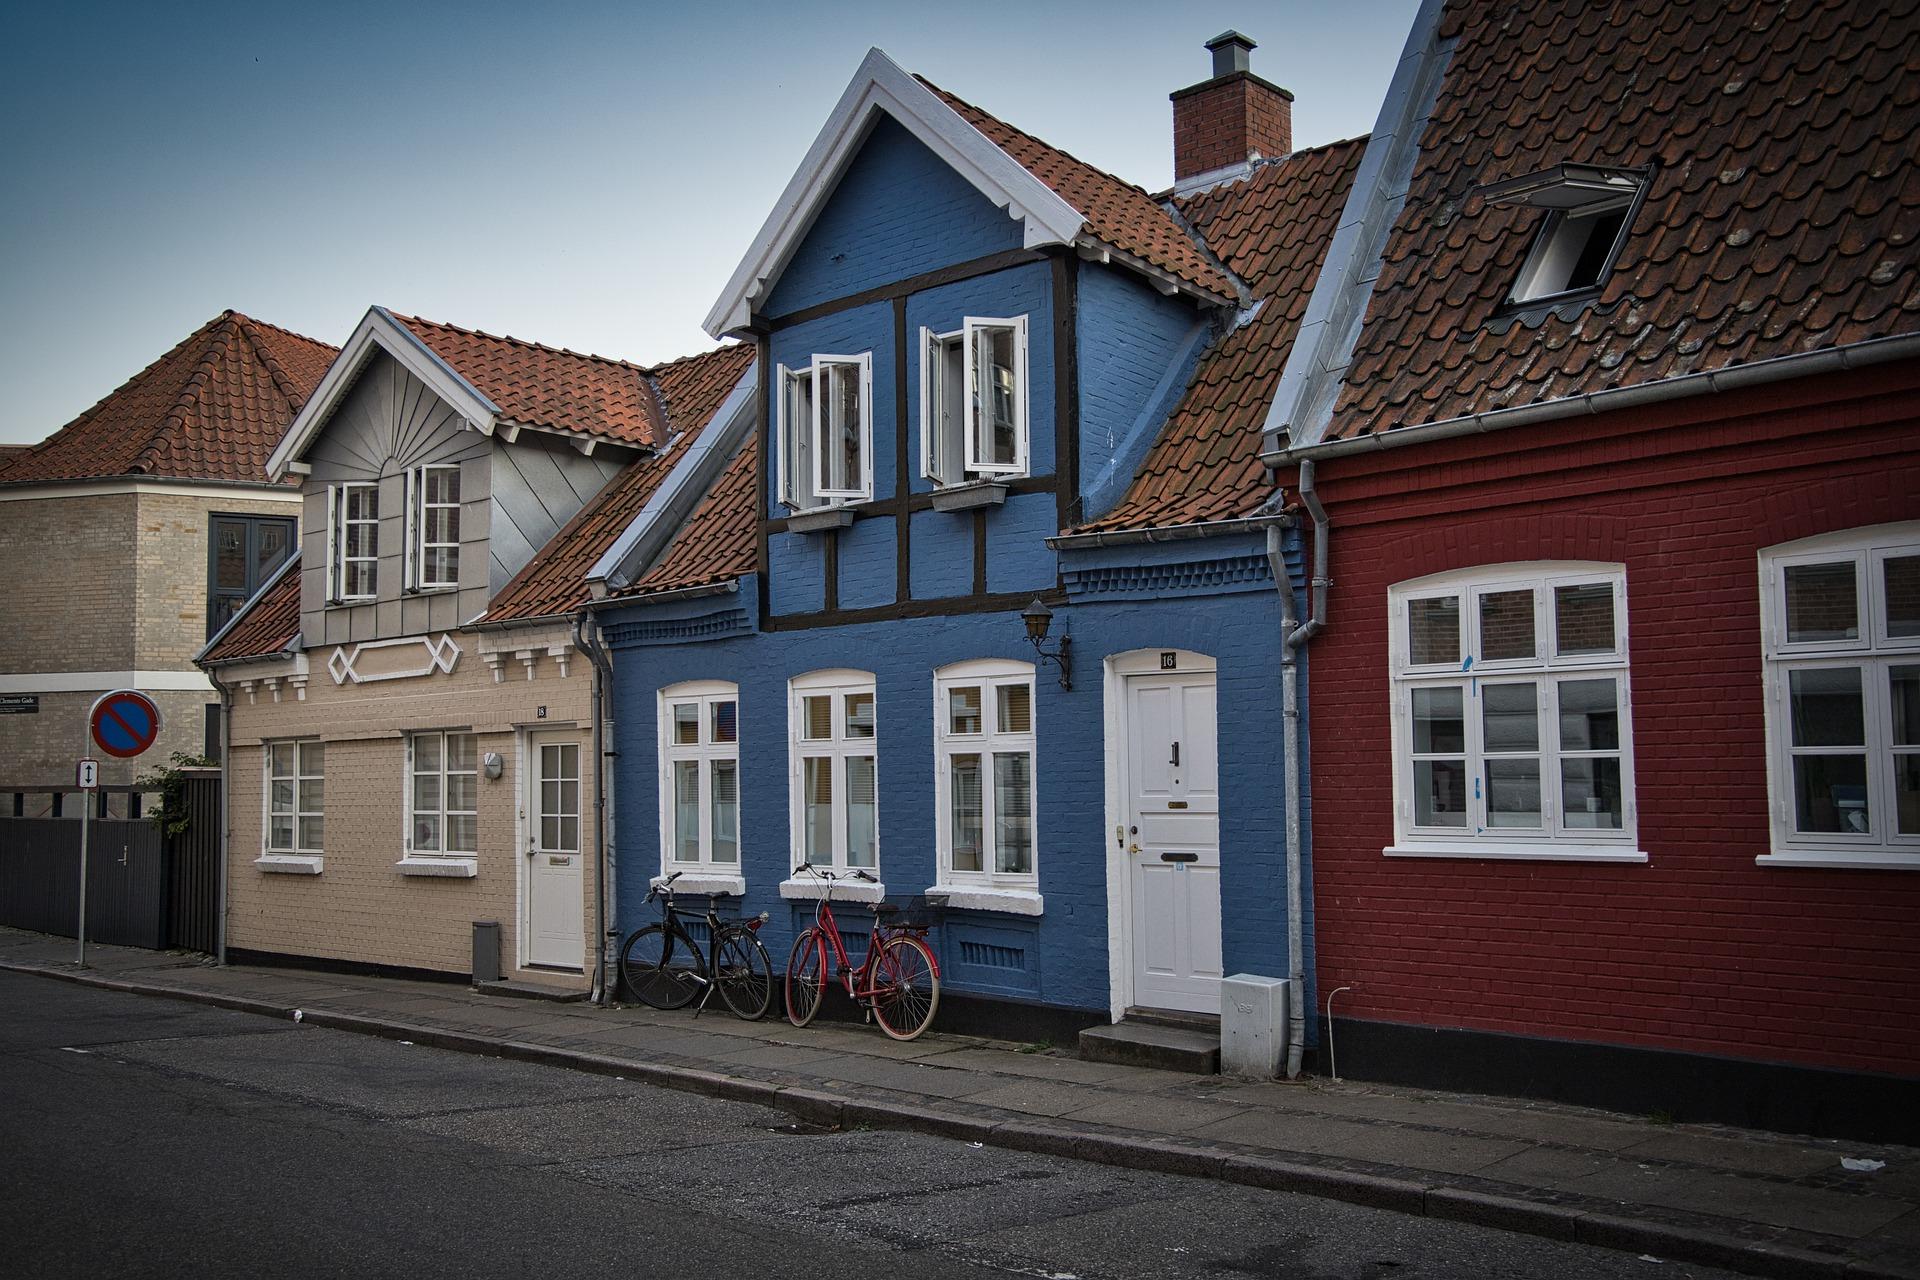 Aarhus jest zaraz po Kopenhadze najpopularniejszym miejscem na studia w Danii